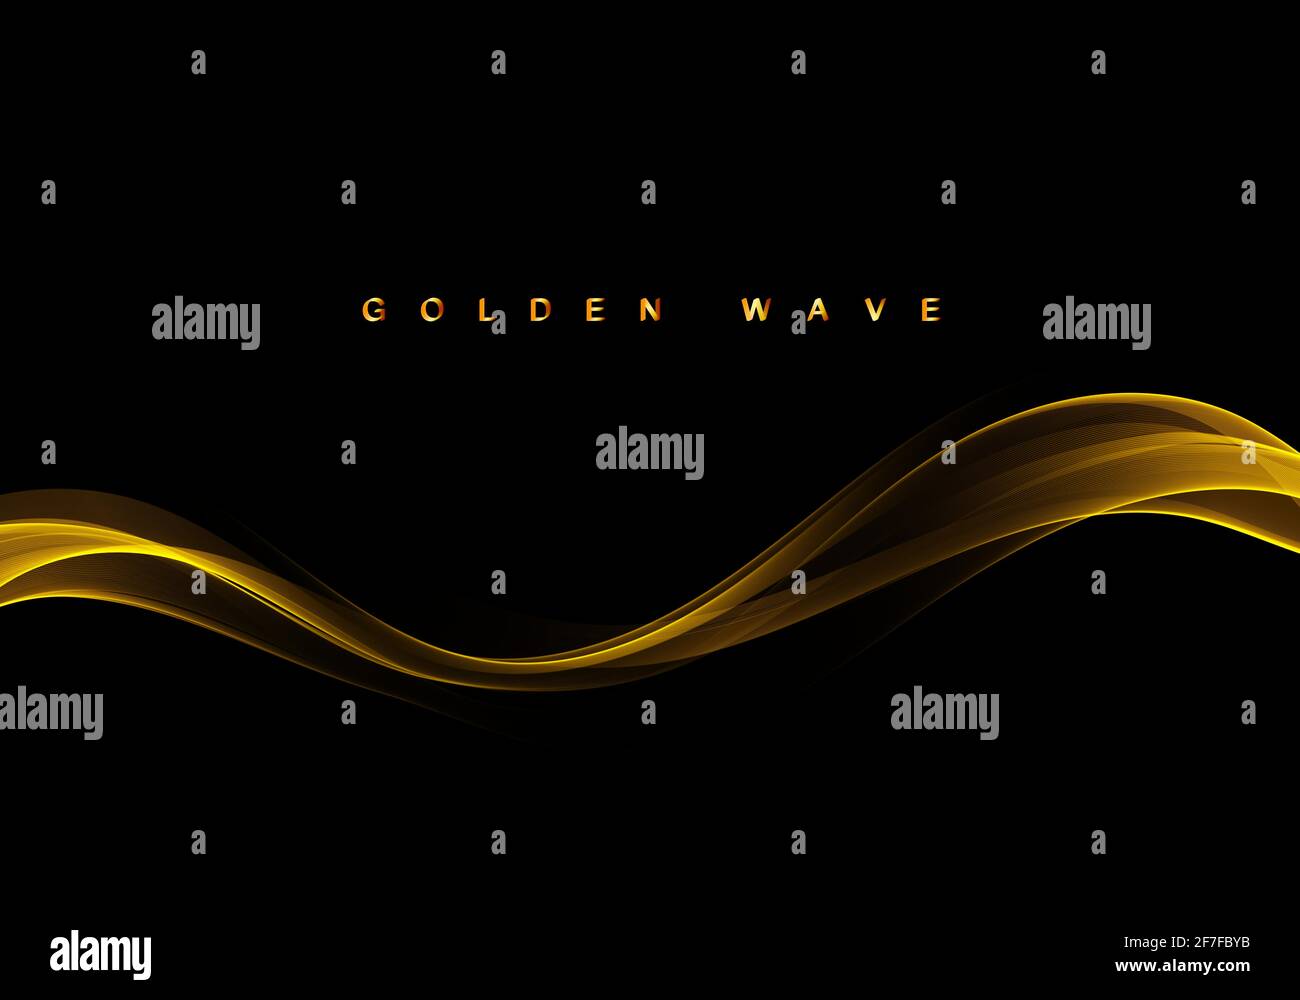 Abstrakt goldener Streifen auf schwarzem Hintergrund glänzend goldene Welle mit Glühen und Glitter-Effekt.Vektor-Illustration Stock Vektor